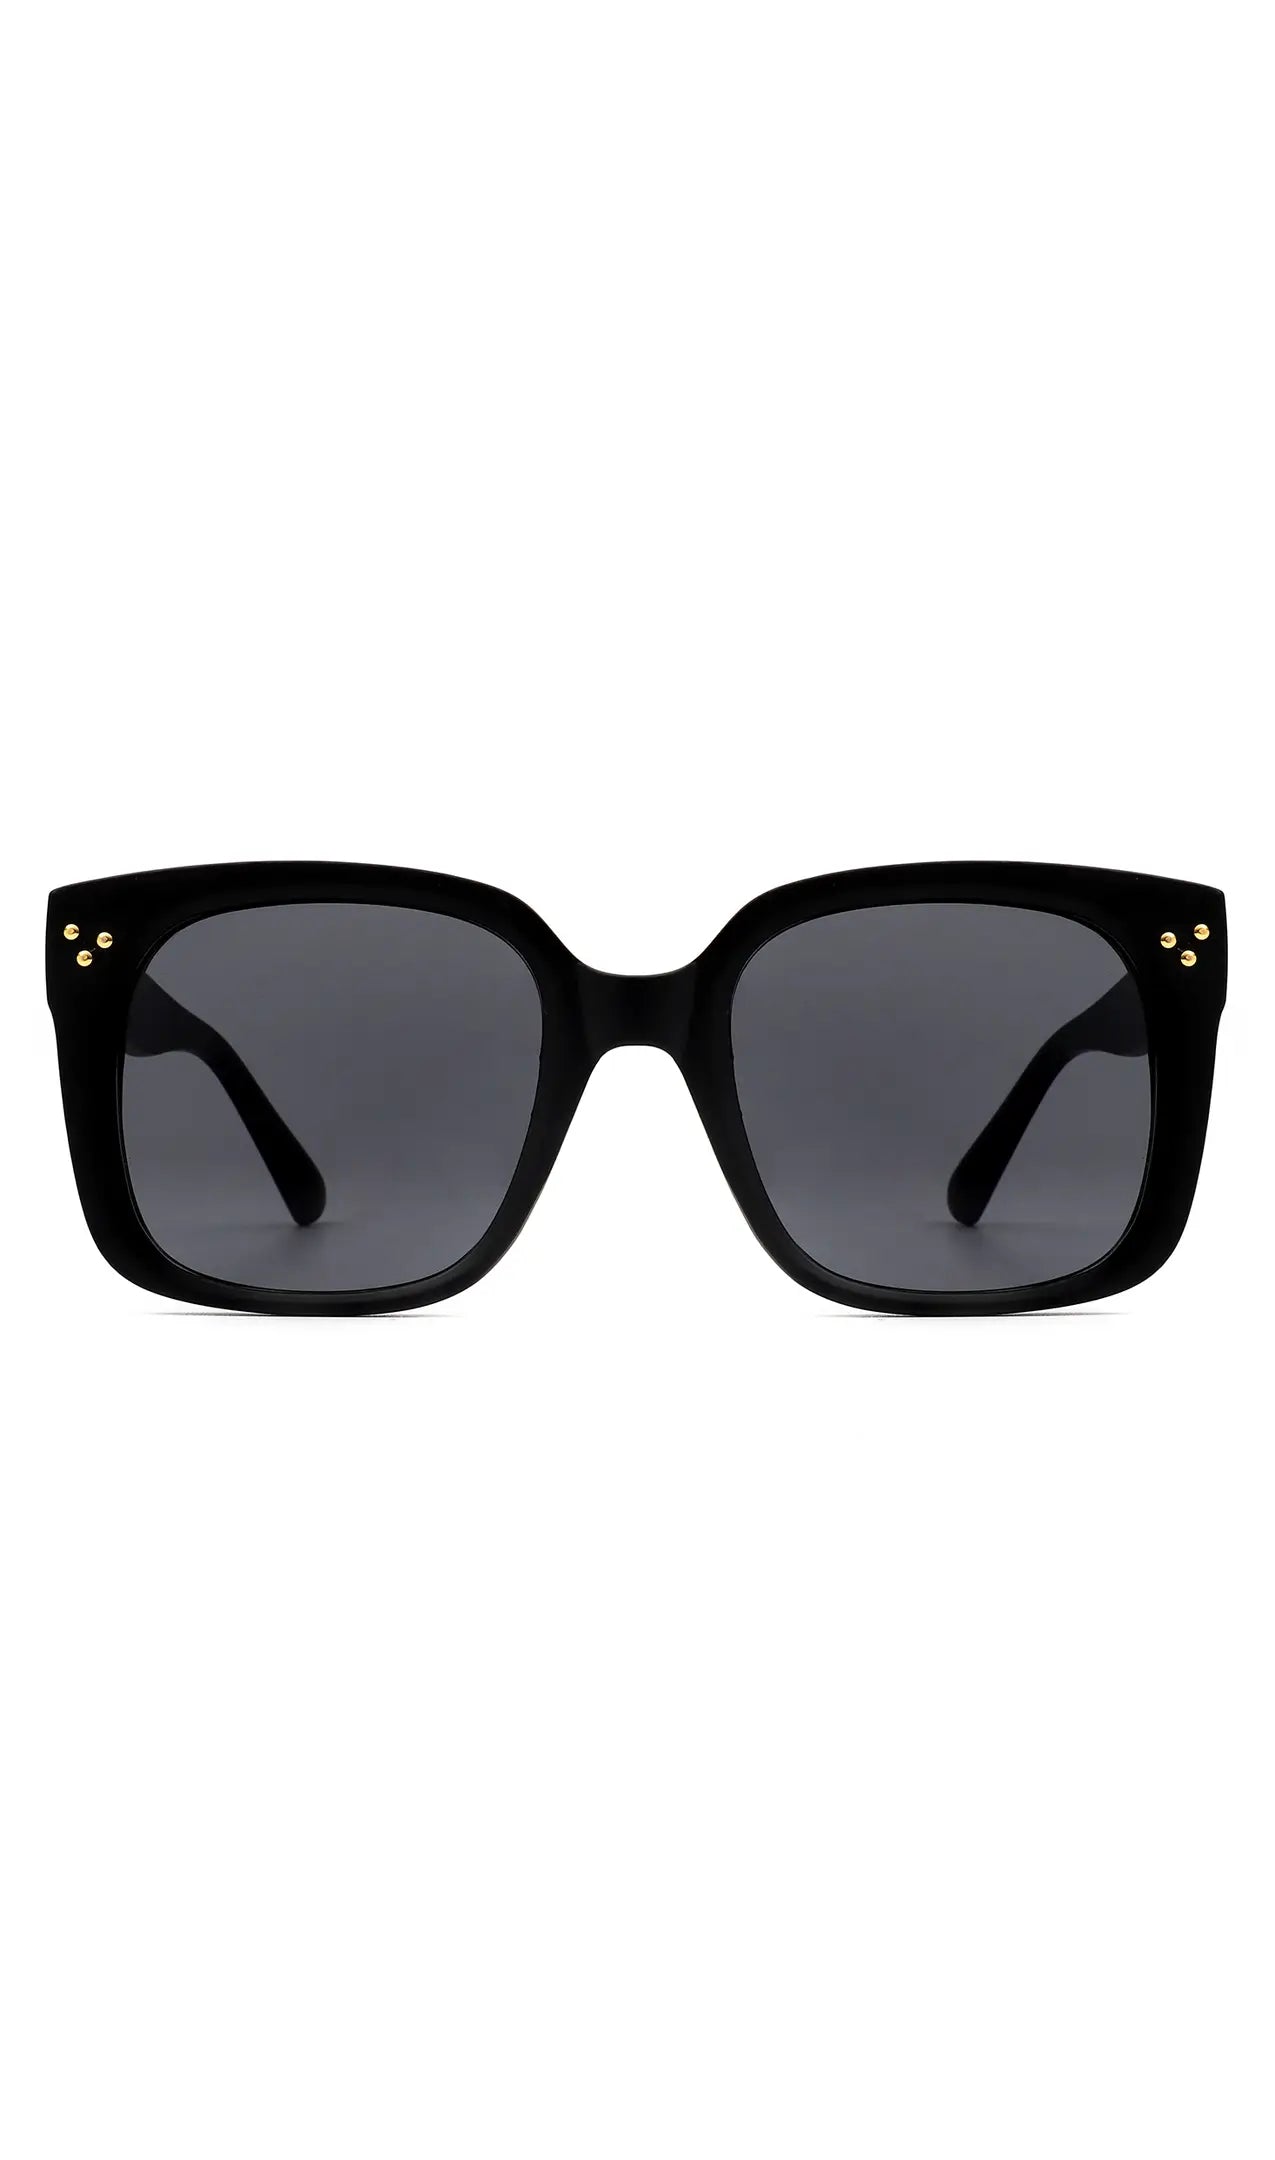 The Deborah Vintage Cat Eye Sunglasses